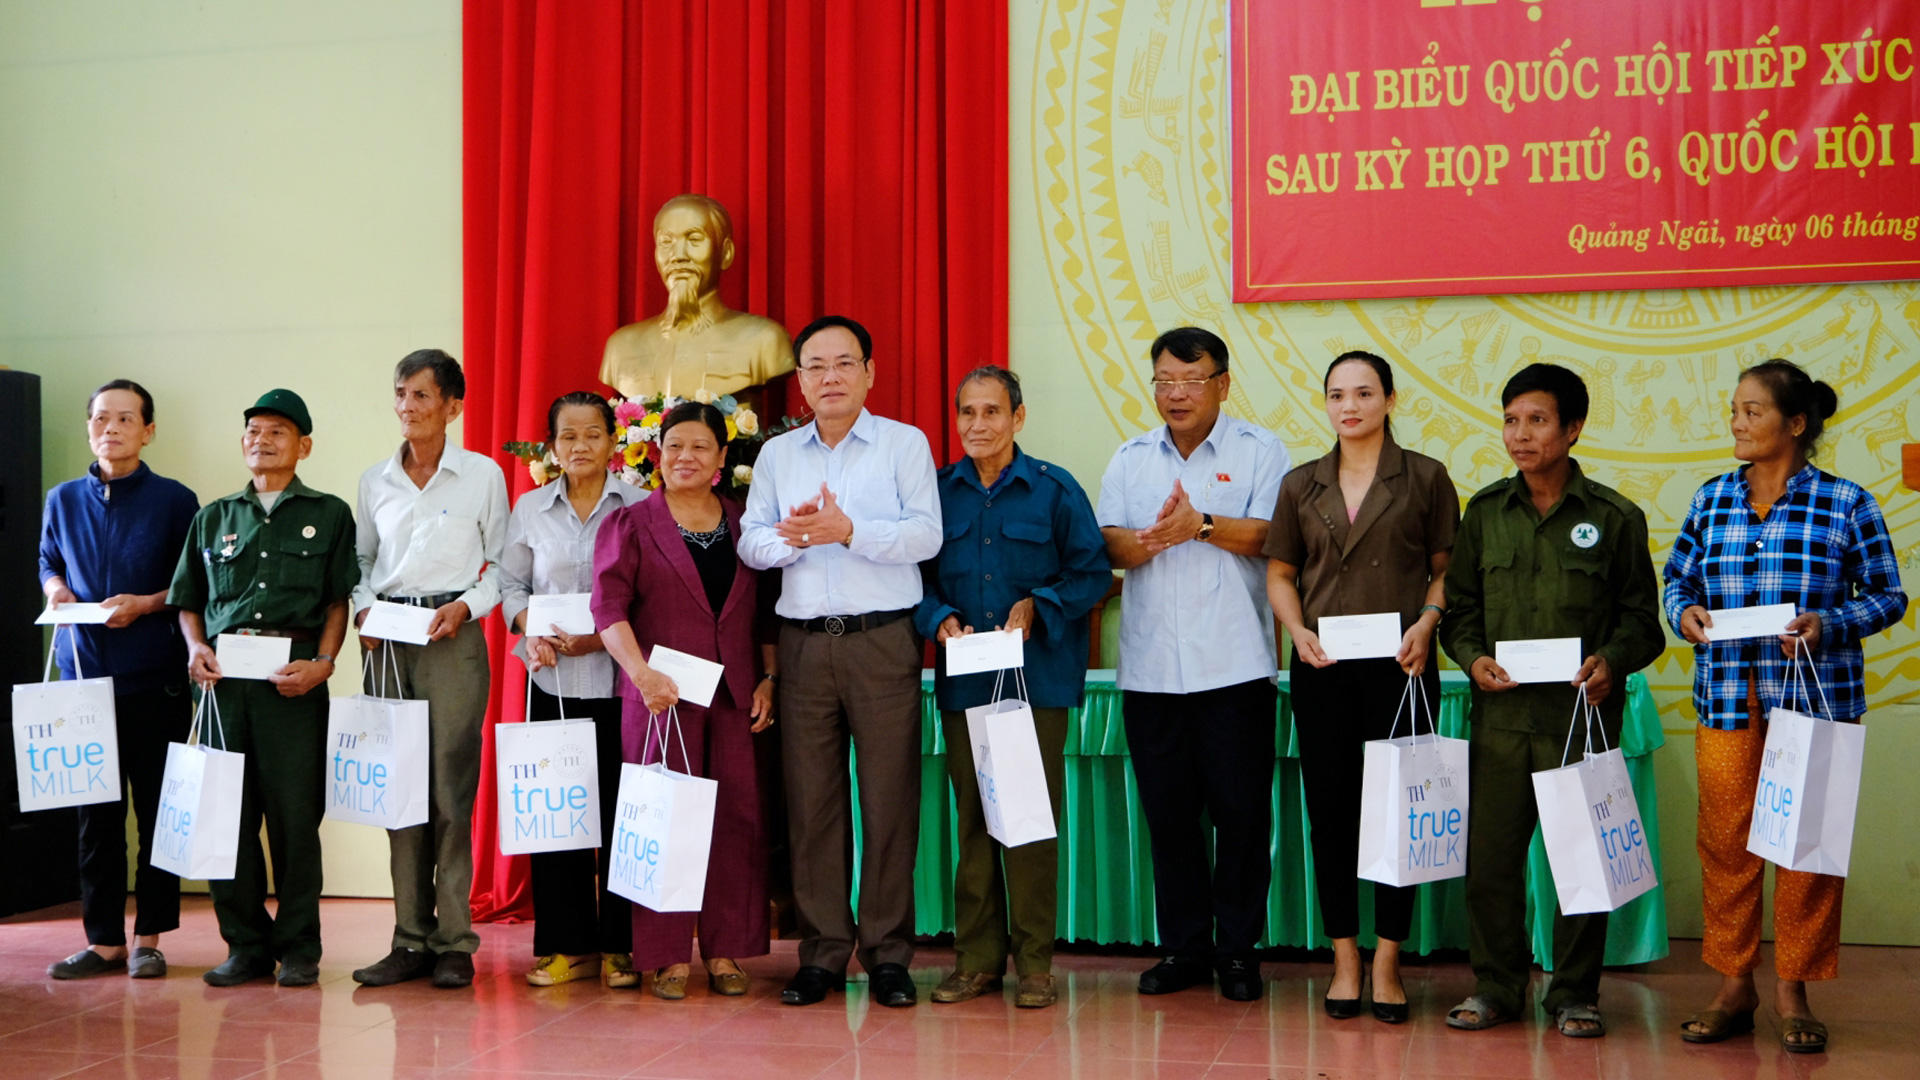 Đồng chí Nguyễn Tạo và đồng chí Nguyễn Văn Yên trao quà cho các hộ gia đình xã Quảng Ngãi